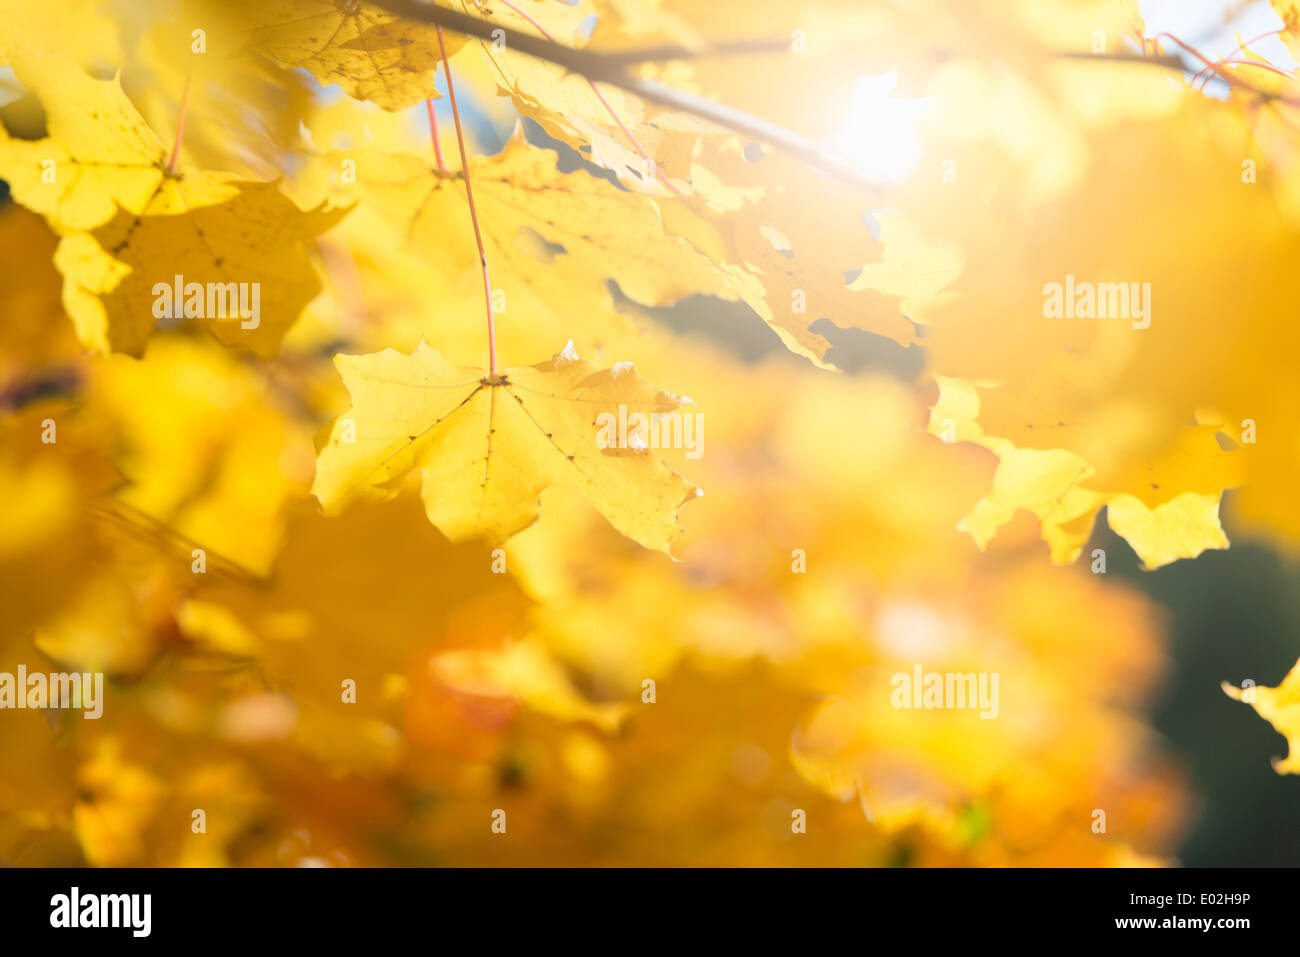 Détail de la nature des feuilles d'automne colorés avec des feuilles jaunes, la Suède. Banque D'Images